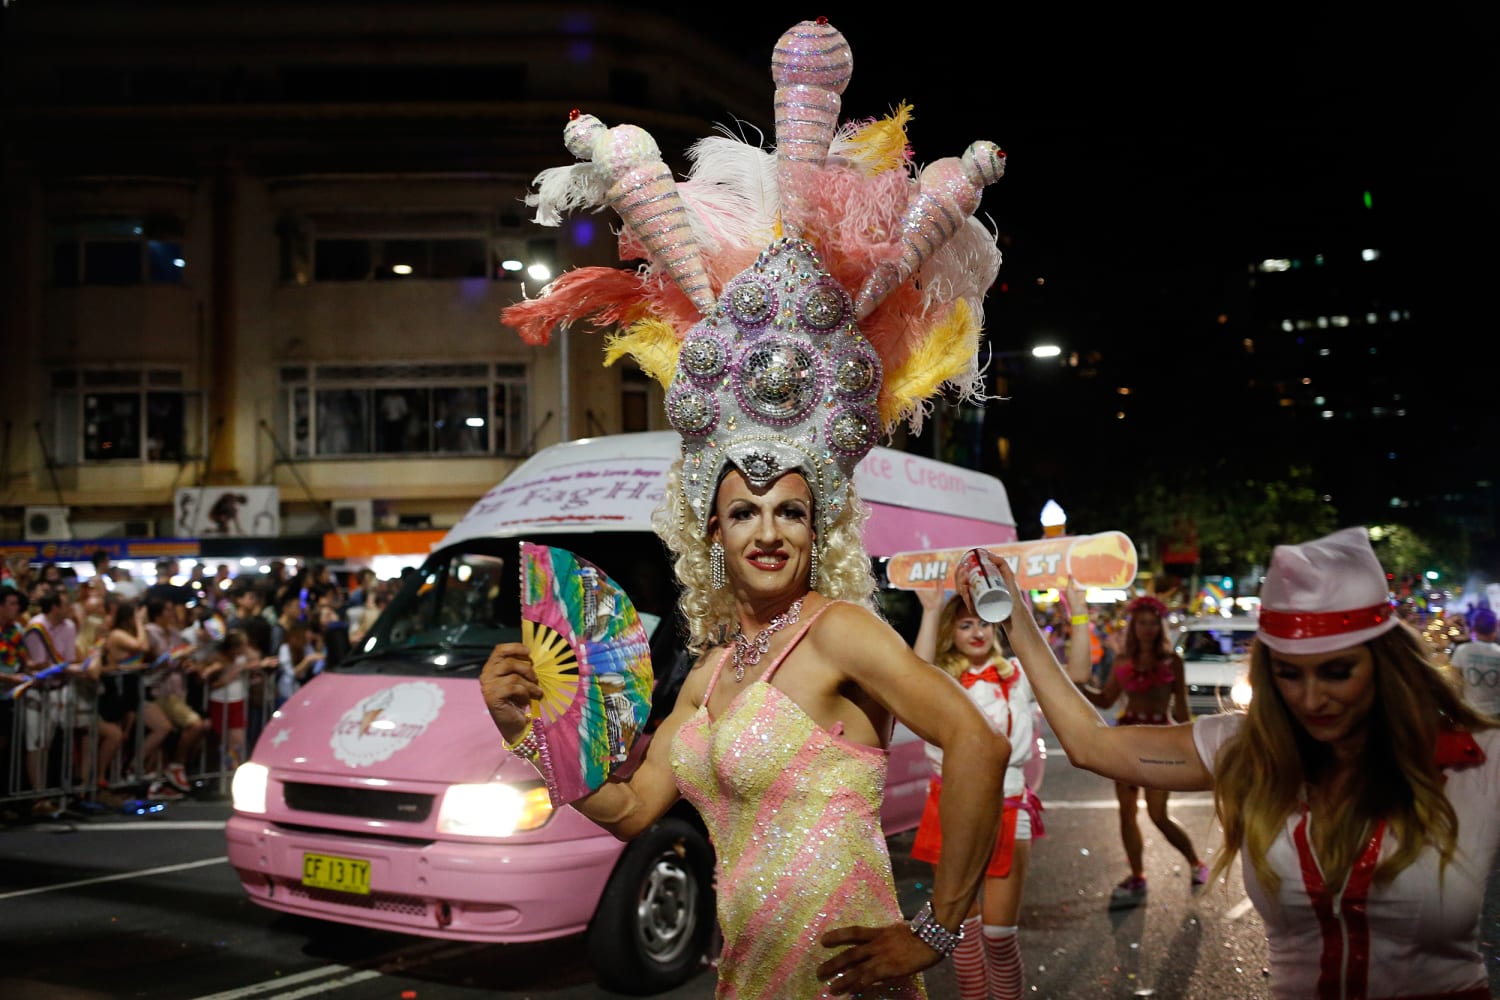 Sydney gay and lesbian mardi gras festival